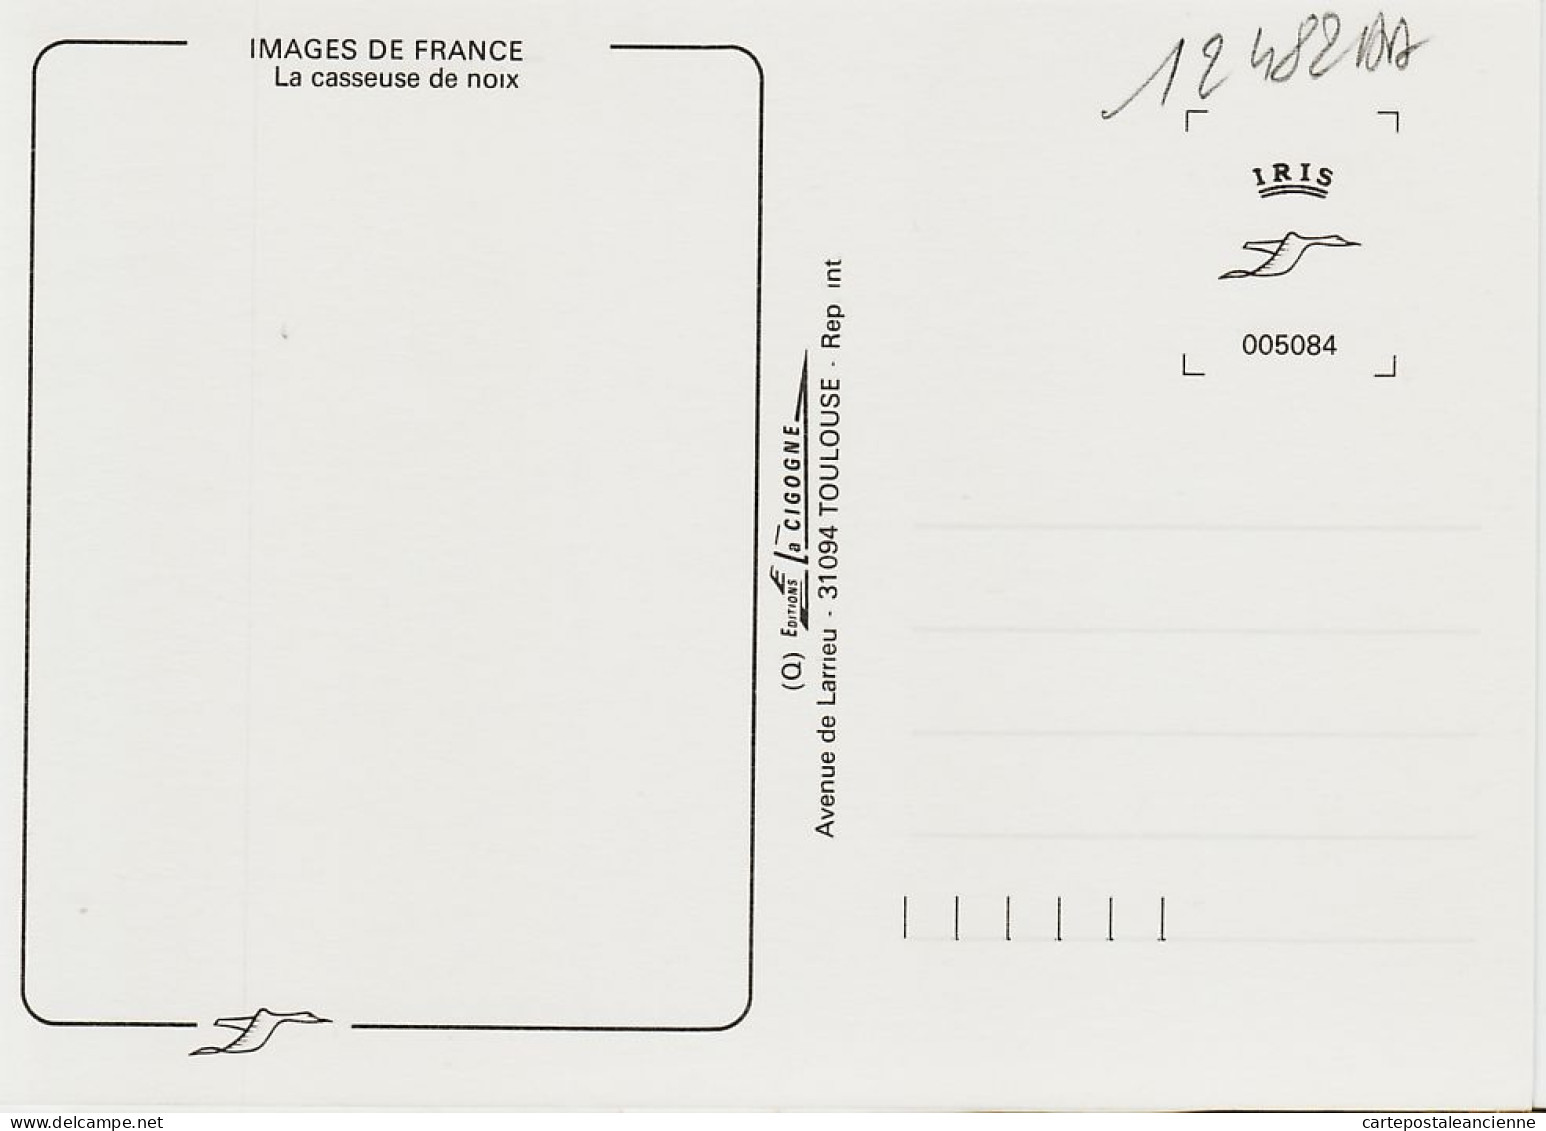 05454 / Midi Pyrénées La CASSEUSE De NOIX Metier Paysanne Marteau Ardoise Atre Cheminee 1985s - IRIS CIGOGNE - Paysans